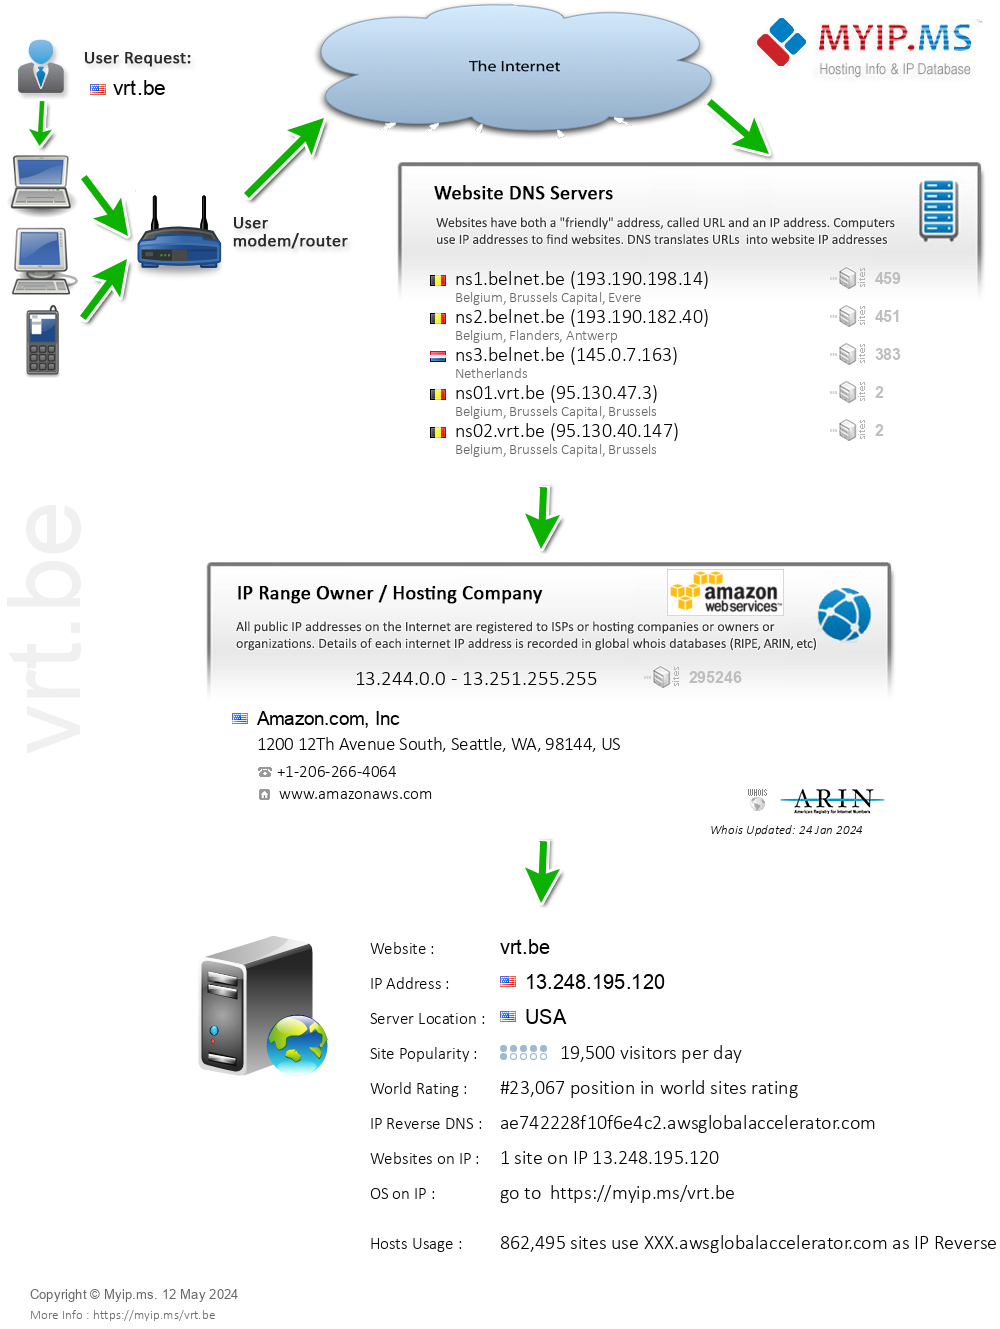 Vrt.be - Website Hosting Visual IP Diagram